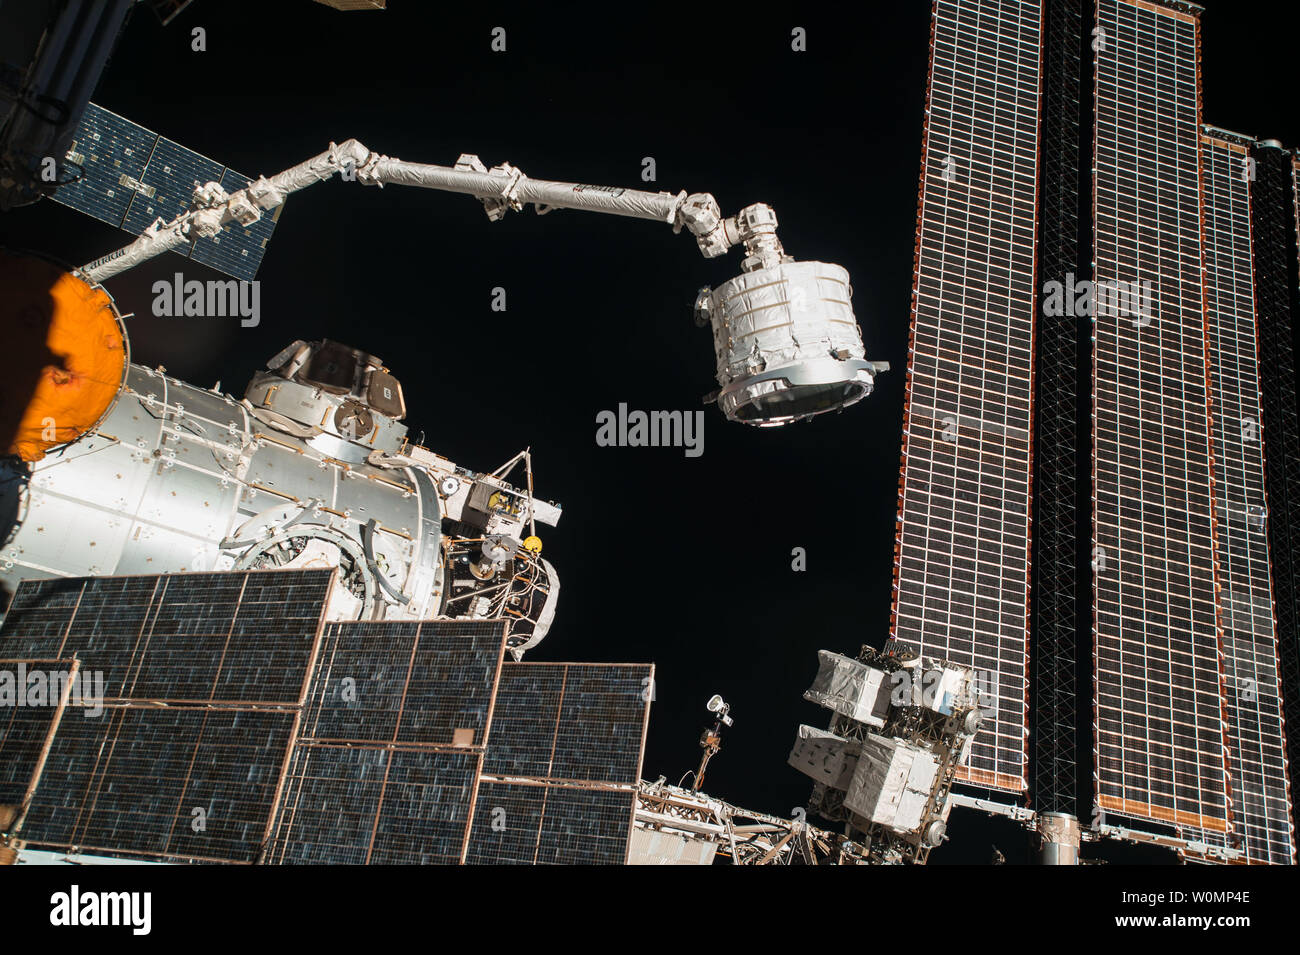 Die bigelow Erweiterbar Aktivität Modul (BEAM) wurde auf der Internationalen Raumstation am April 16, 2016 5:36:00 Uhr EDT. Nach der Extraktion von SpaceX Dragon's Cargo mit Hilfe des Roboterarms Canadarm2 Handwerk, Boden-Controller installiert die erweiterbaren Modul in die hintere Hafen der Ruhe. Astronauten werden BEAM Gelegentlich geben Sie Tests durchzuführen, um moduleÕs Gesamtleistung und die Fähigkeit der erweiterbare Lebensräume zu validieren. Die NASA untersucht Konzepte für Lebensräume, die Astronauten gesund während Space Exploration halten können. Erweiterbare Lebensräume sind ein solches Konzept Stockfoto